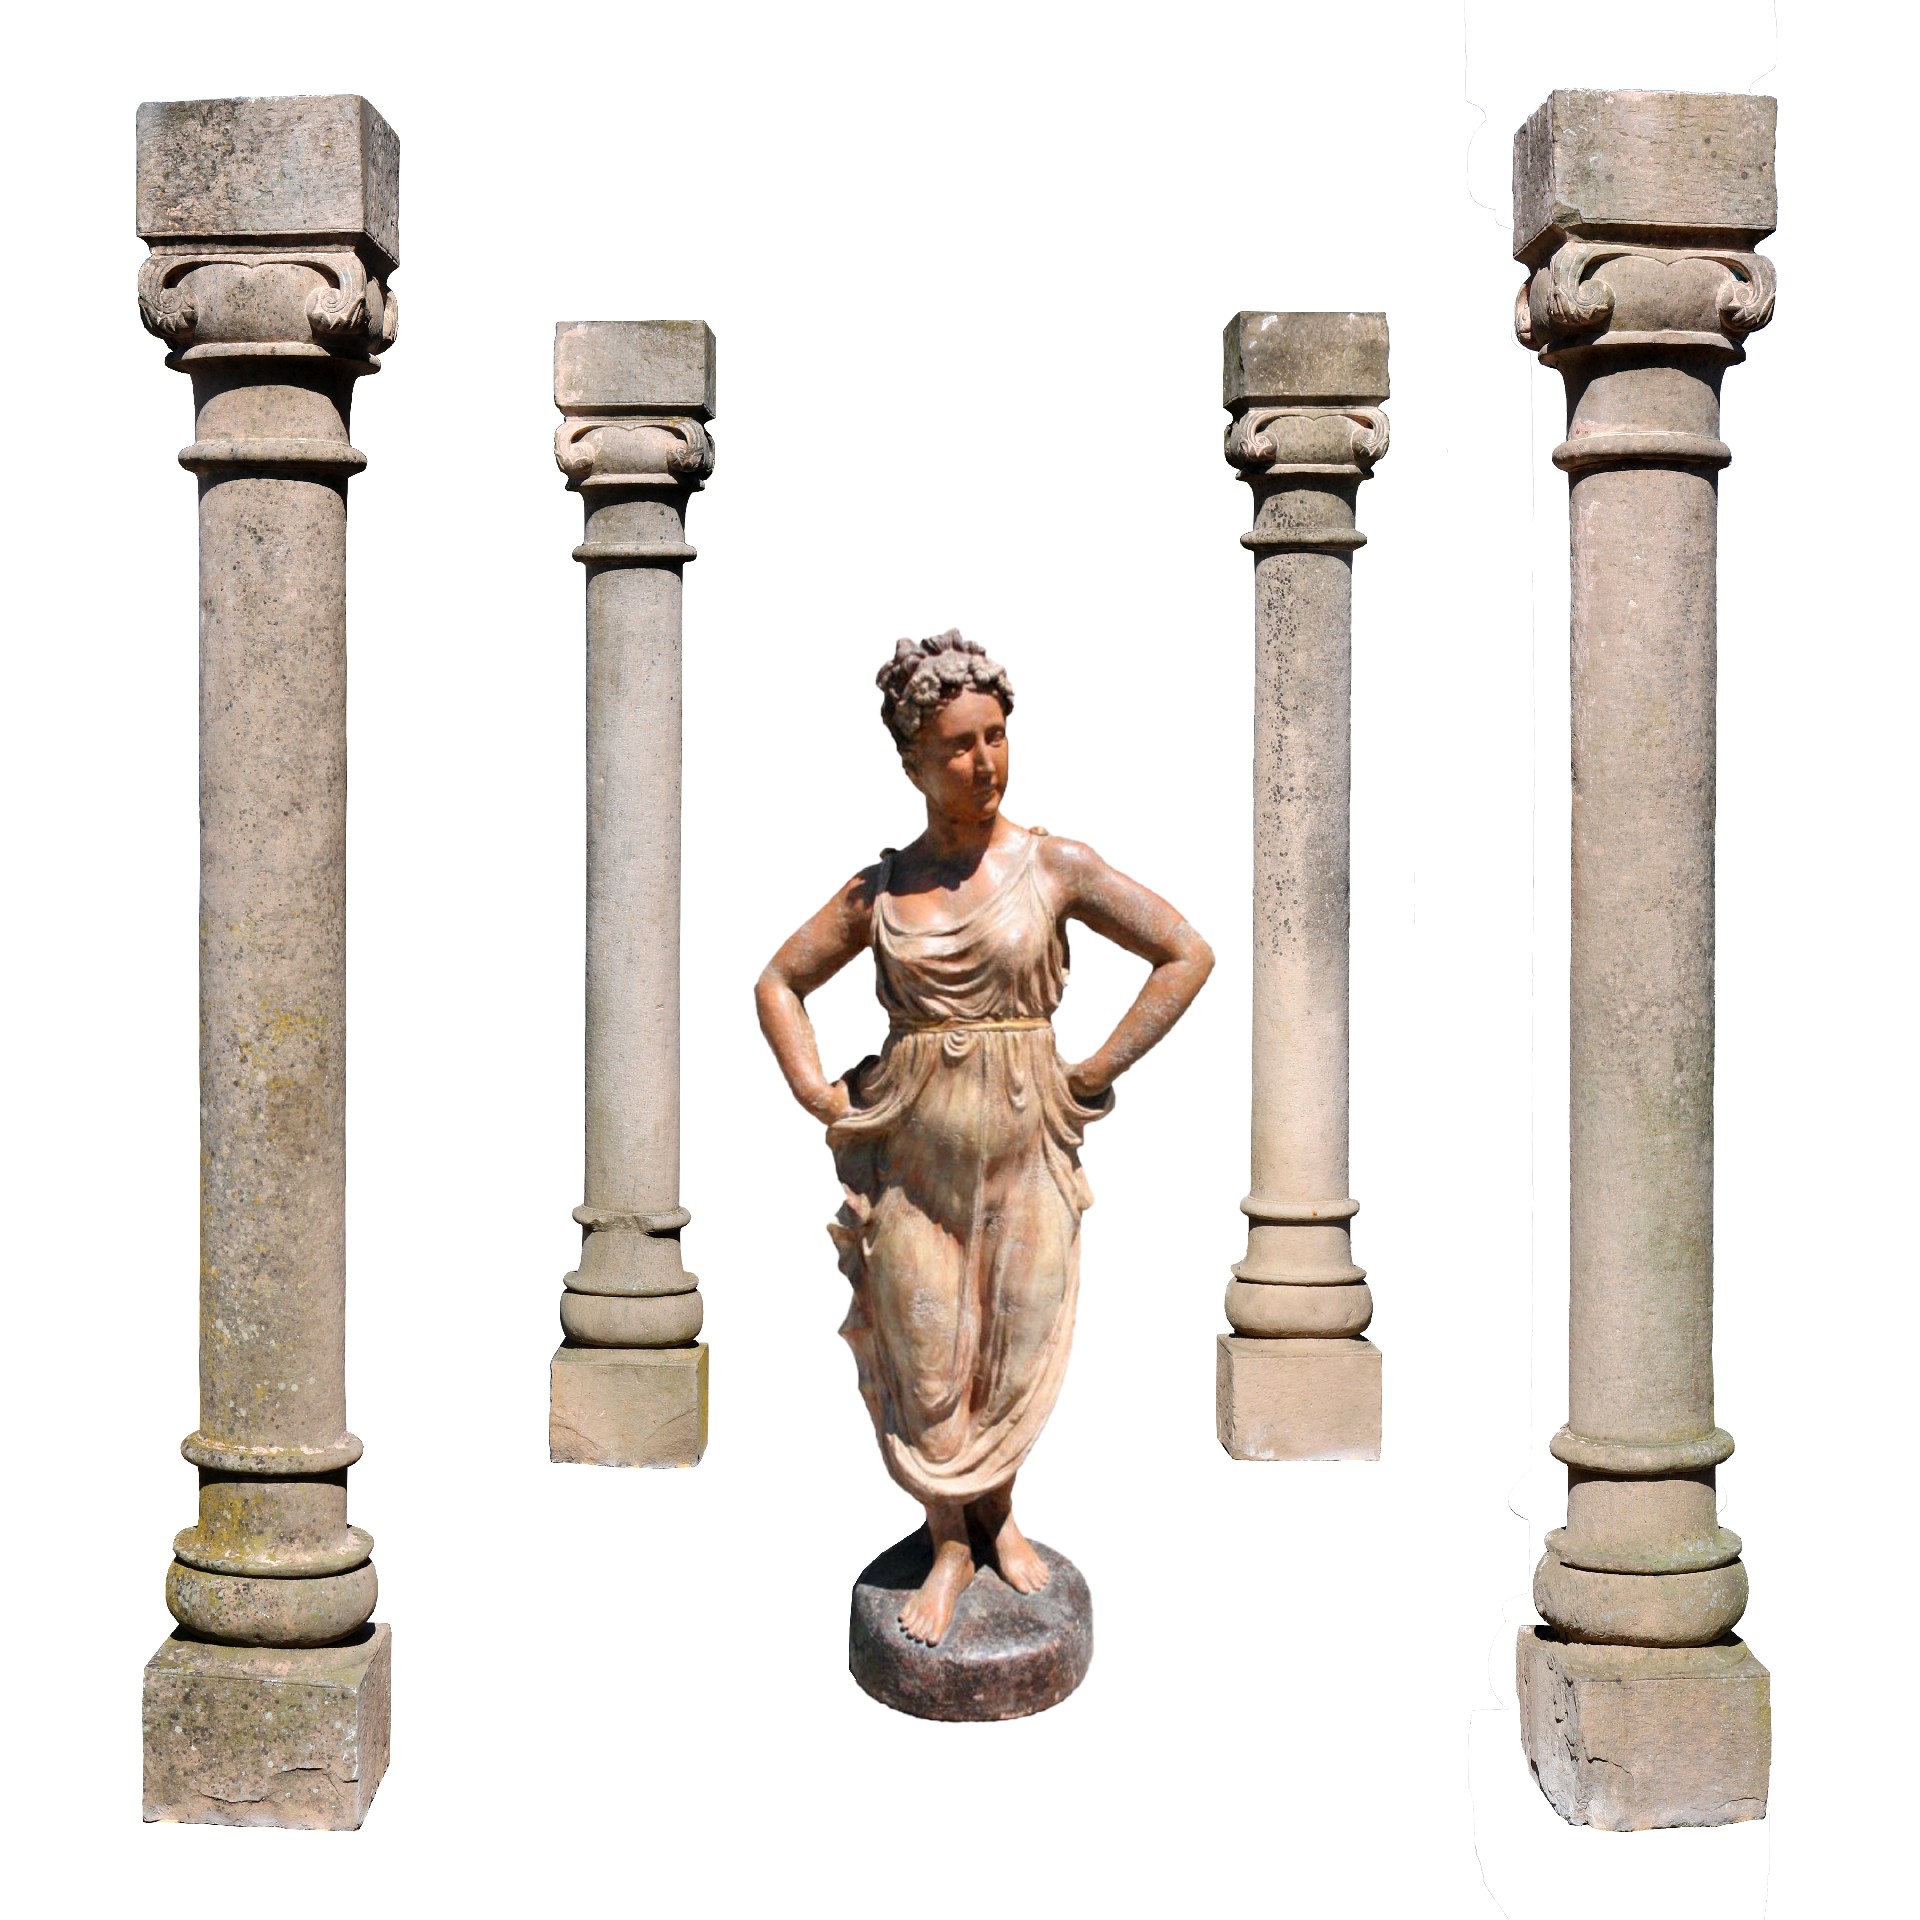 Quattro colonne antiche in pietra. Epoca 1800. - Colonne antiche - Architettura - Prodotti - Antichità Fiorillo